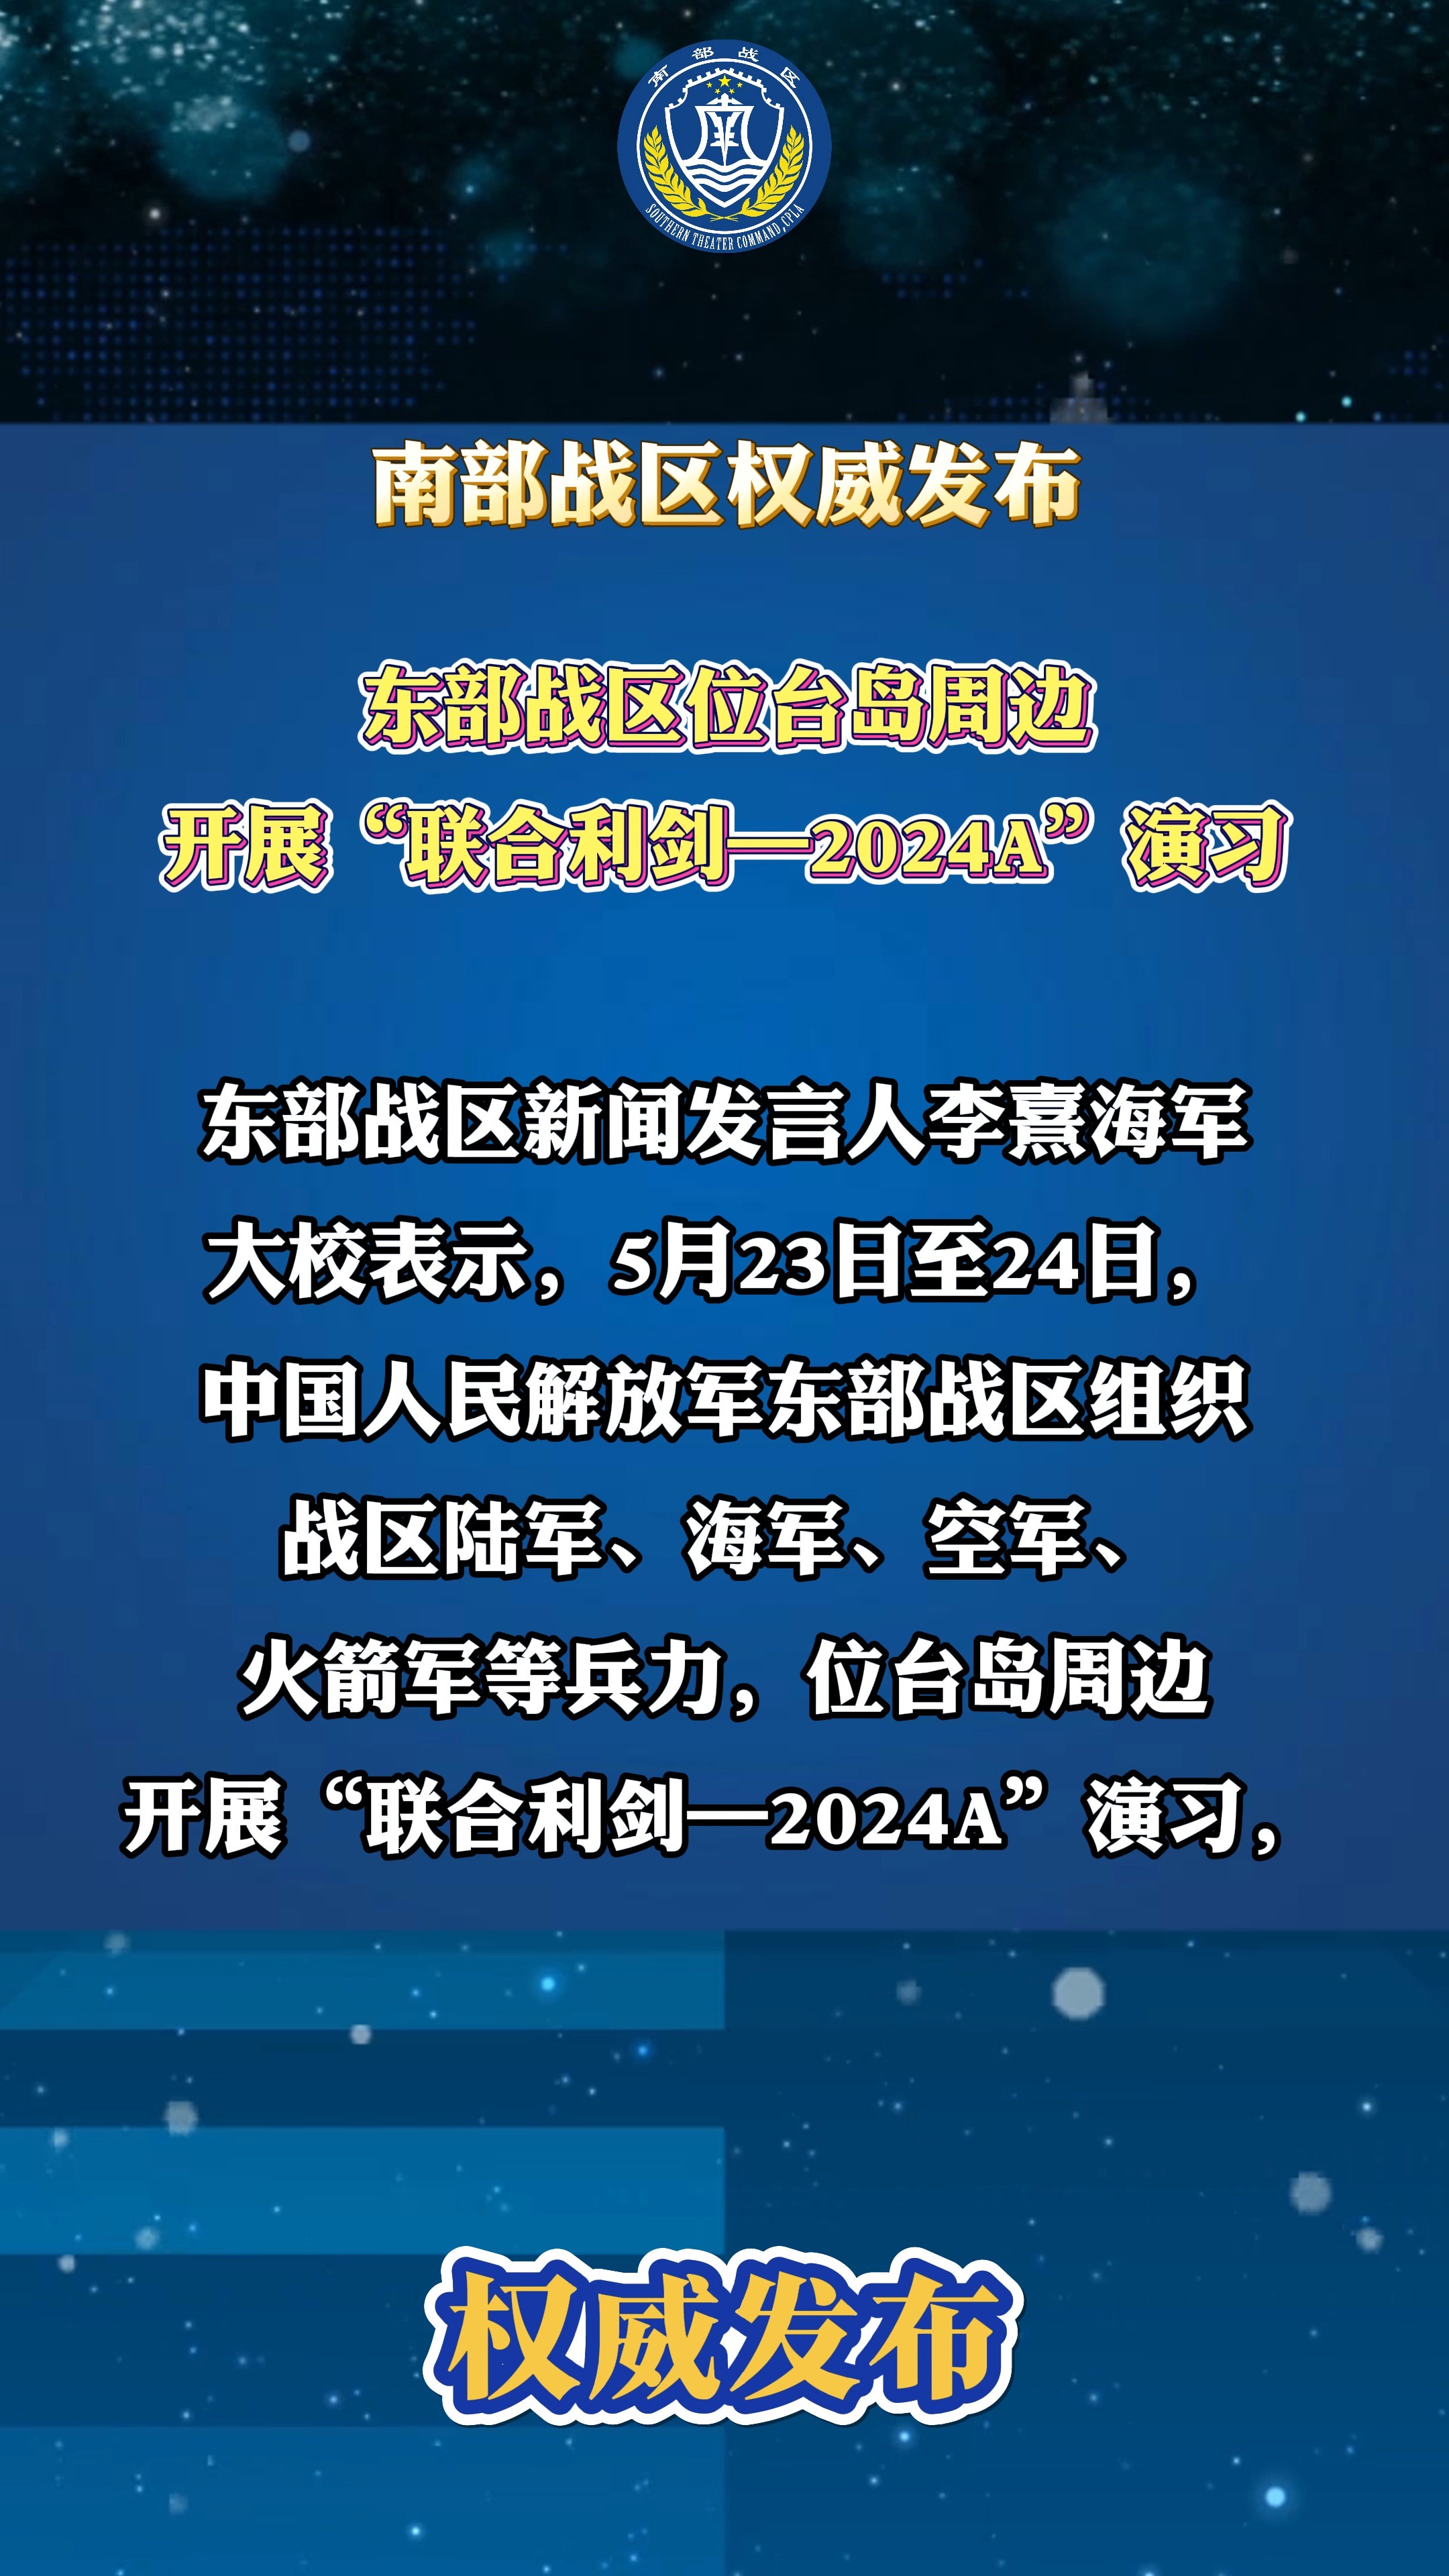 东部战区位台岛周边开展“联合利剑—2024A”演习#台湾海峡 #演习